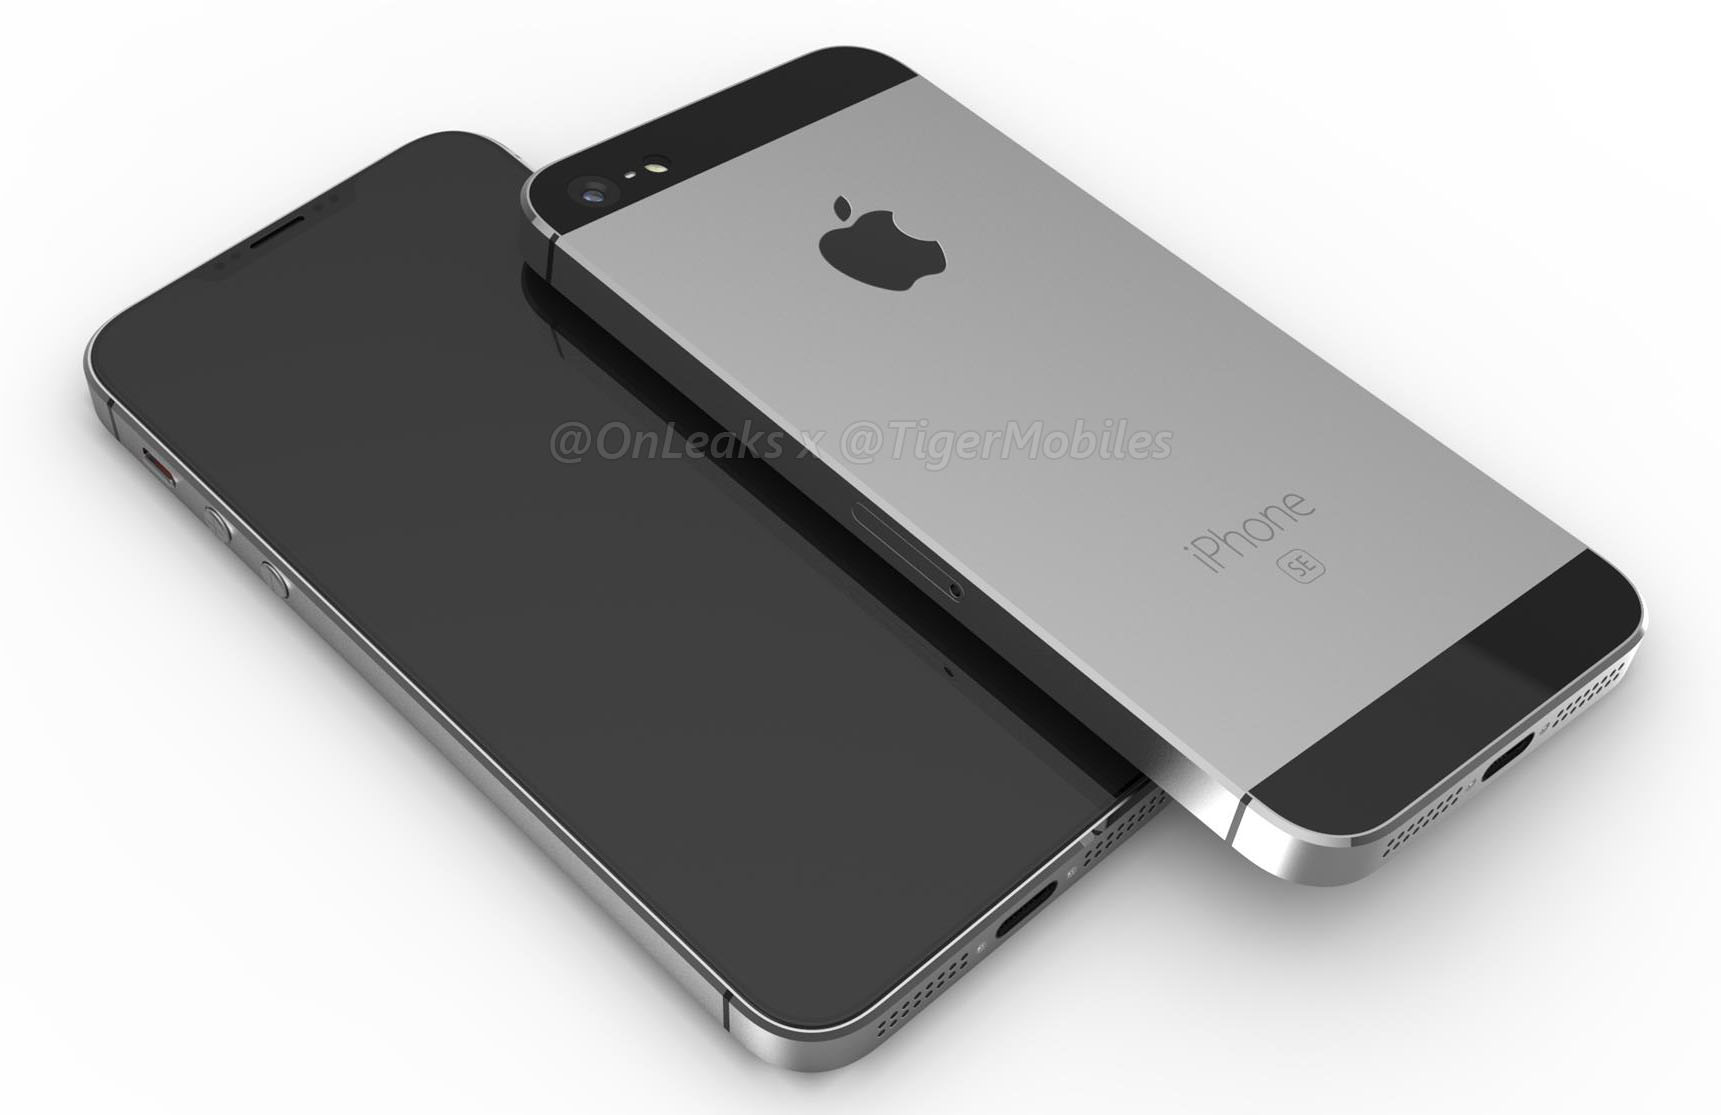 Hé lộ toàn bộ thiết kế truyền thống tuyệt đẹp của iPhone SE 2 qua bộ ảnh render mới rò rỉ